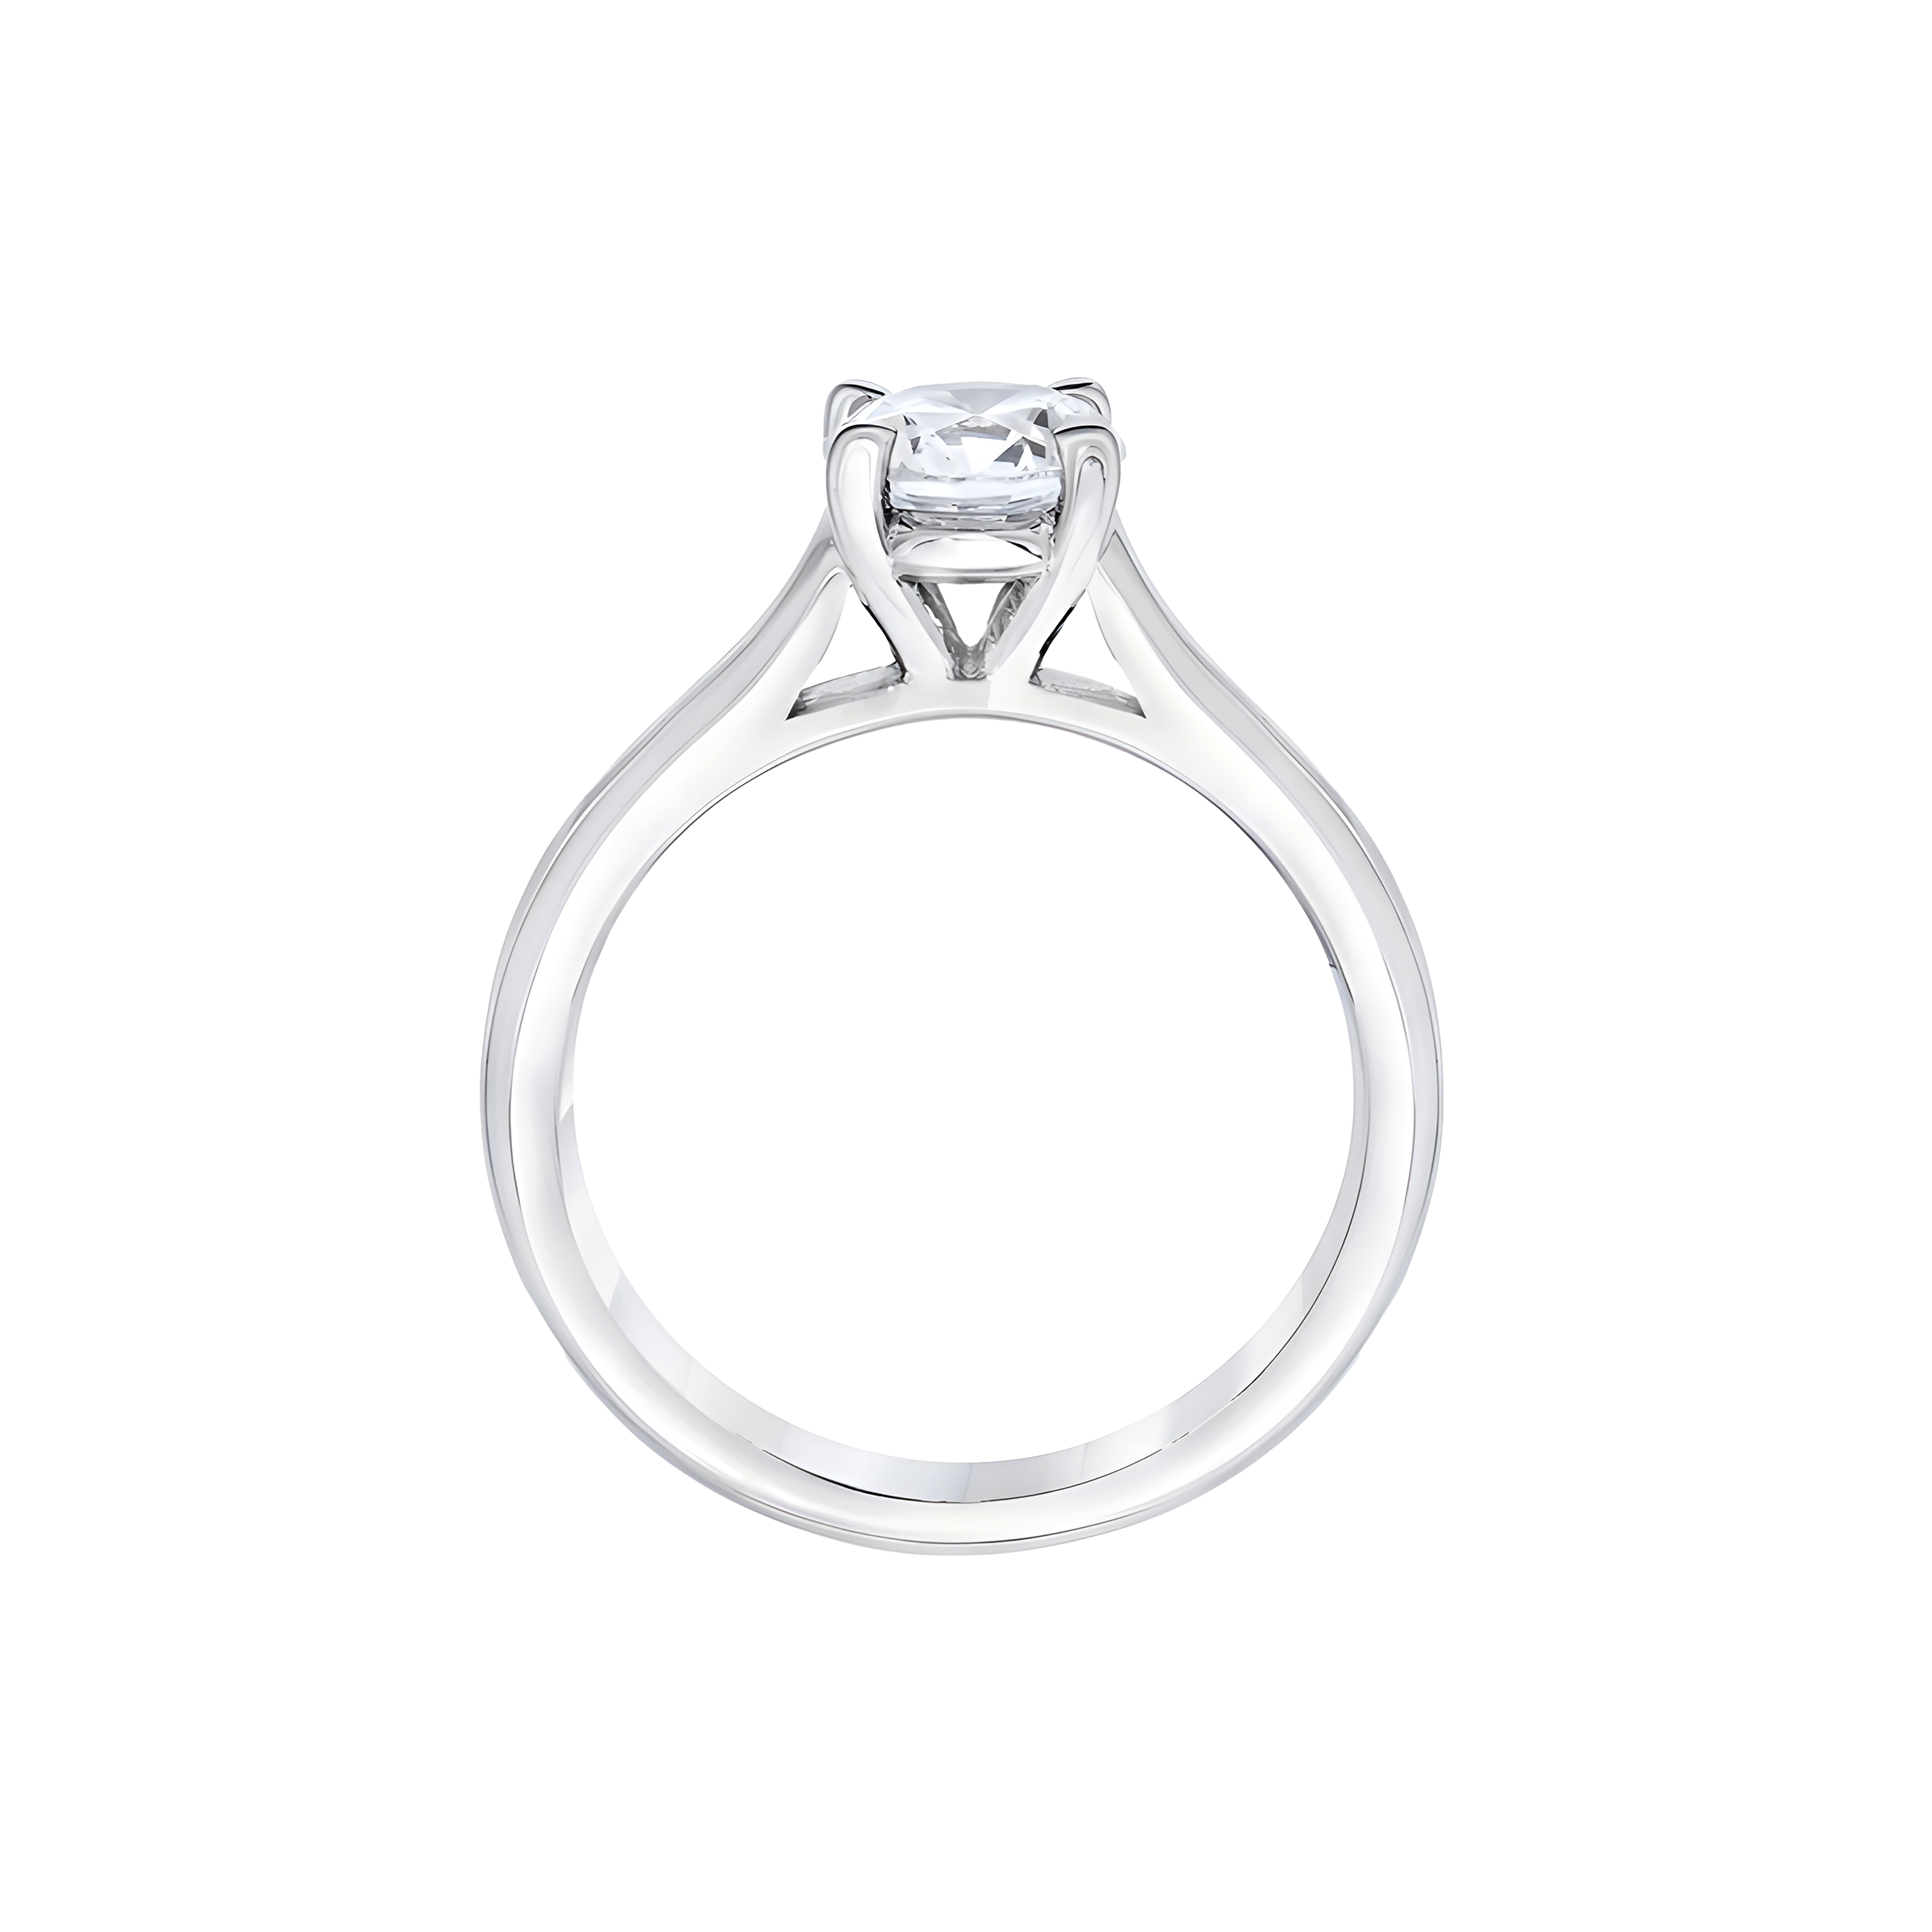 Round Brilliant Solitaire Diamond Engagement Ring in Platinum